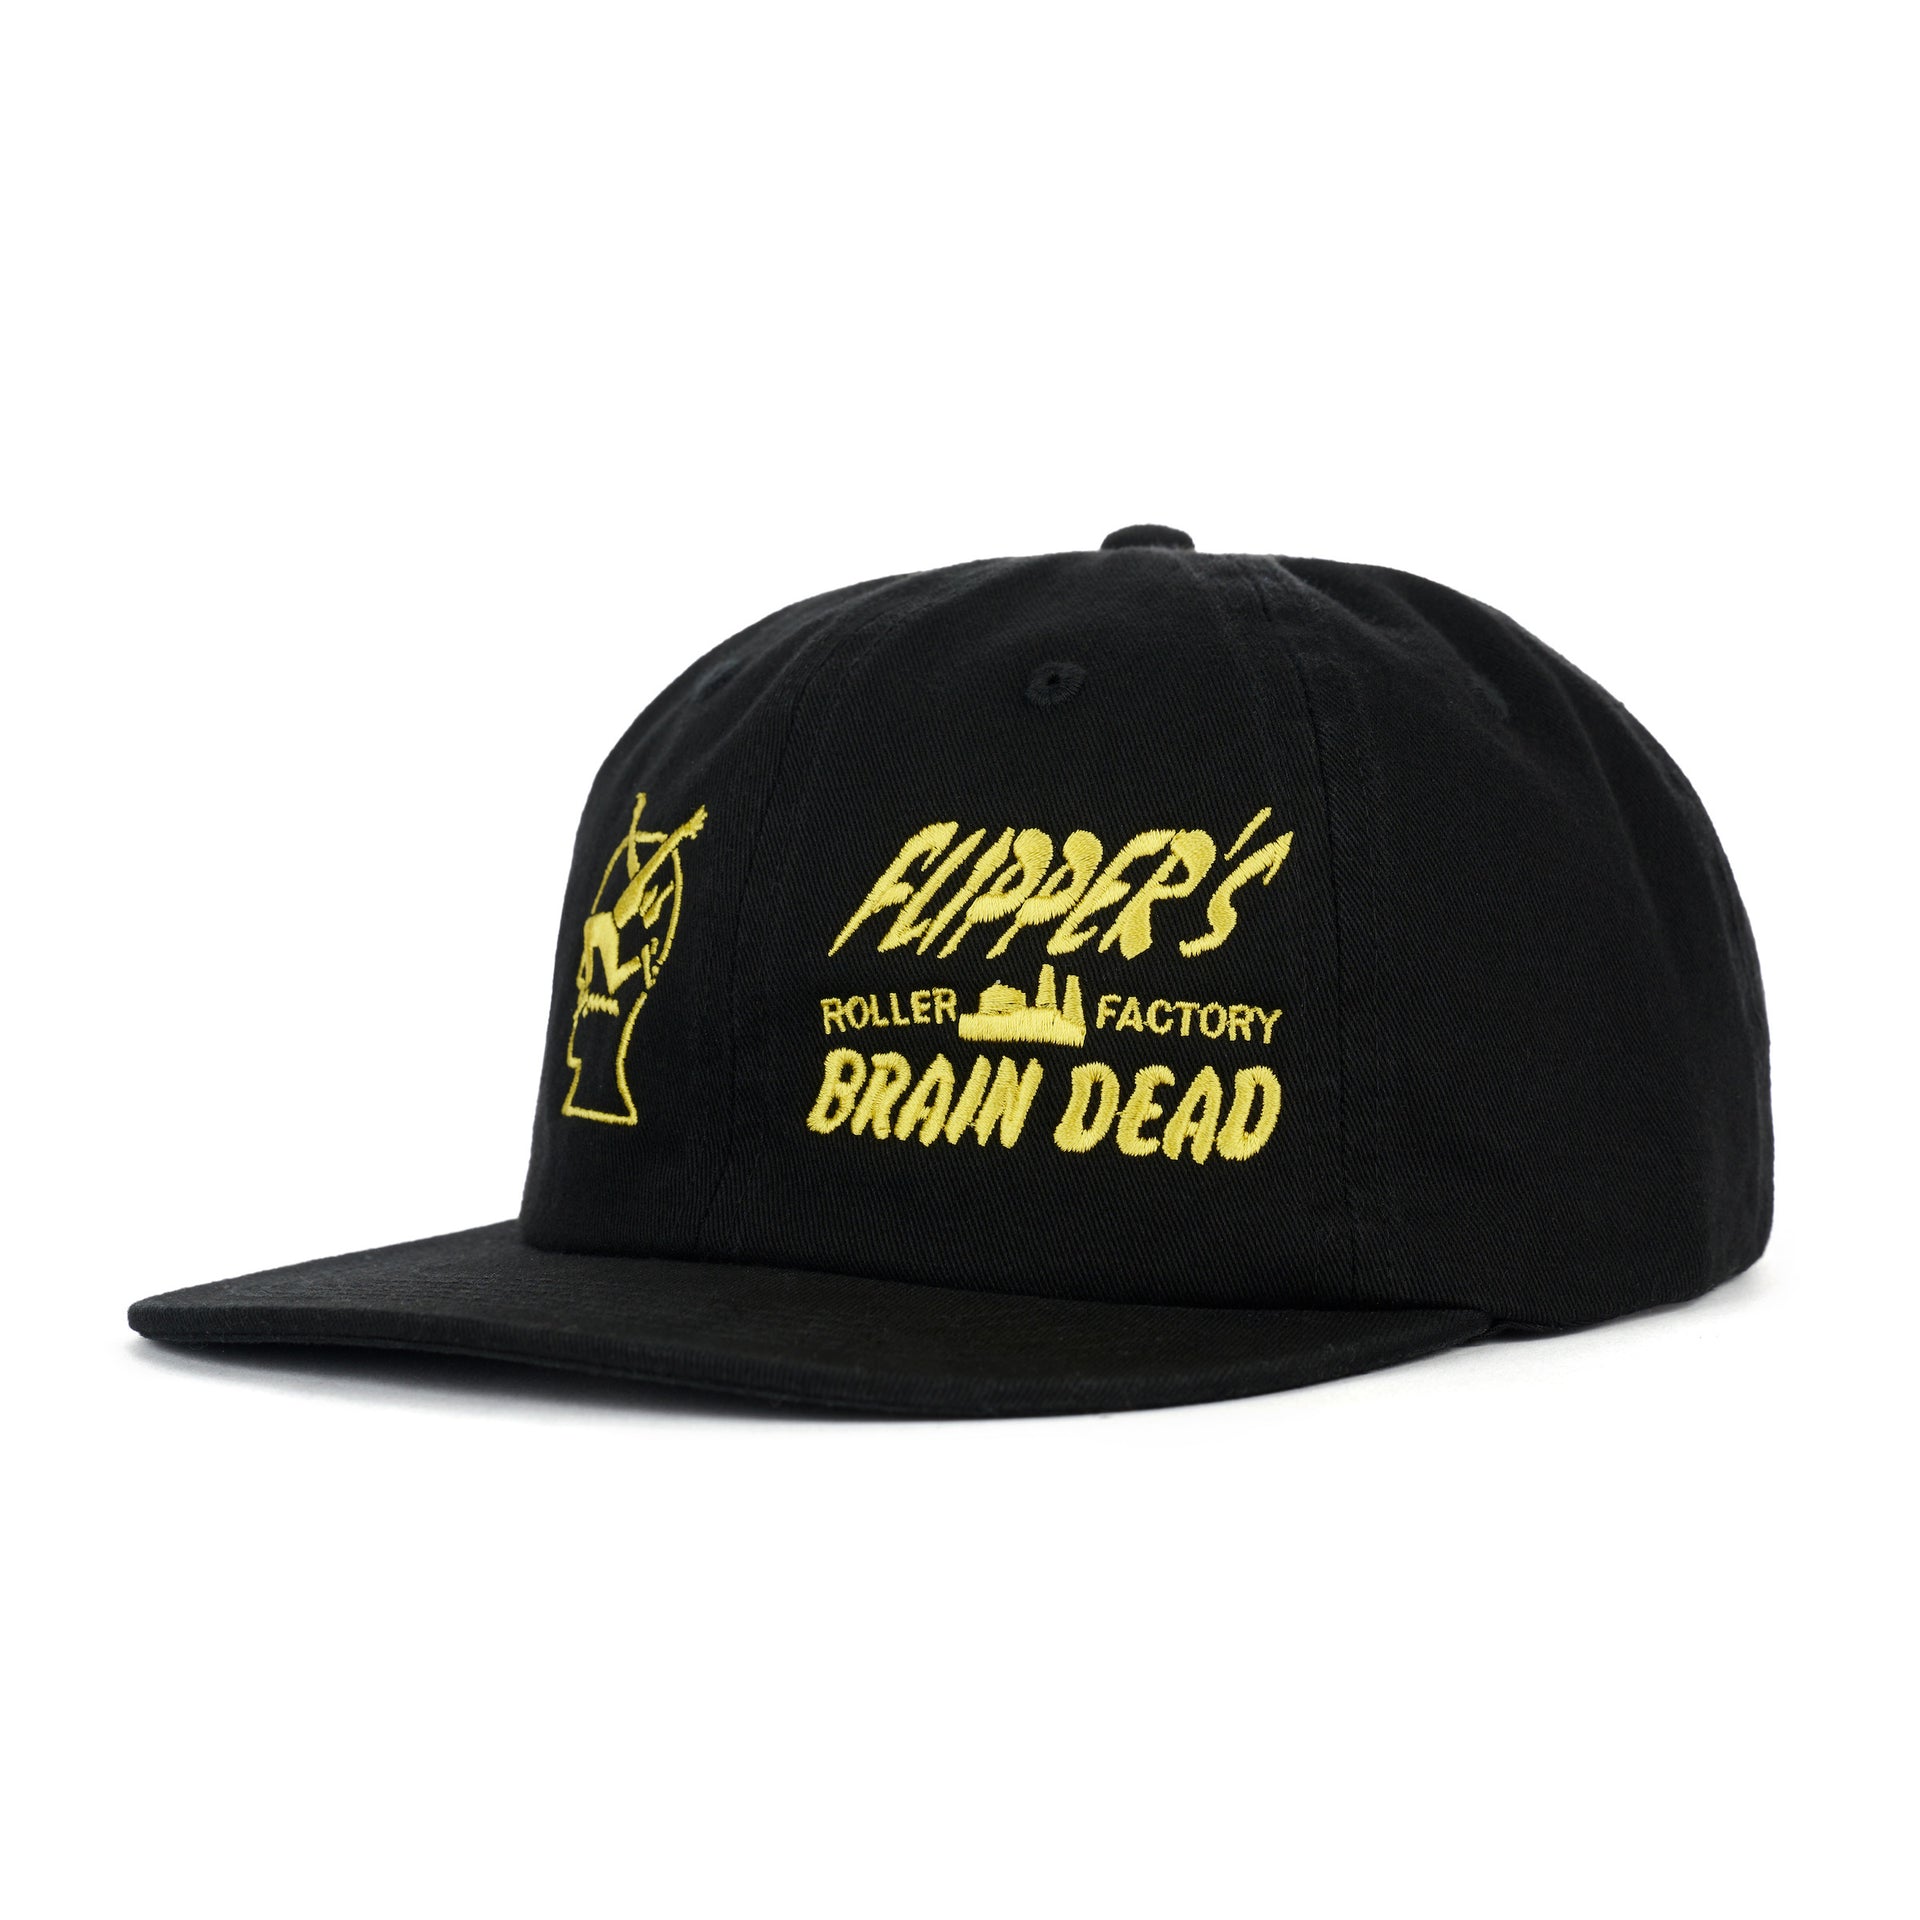 Brain Dead x Flipper's Factory Hat